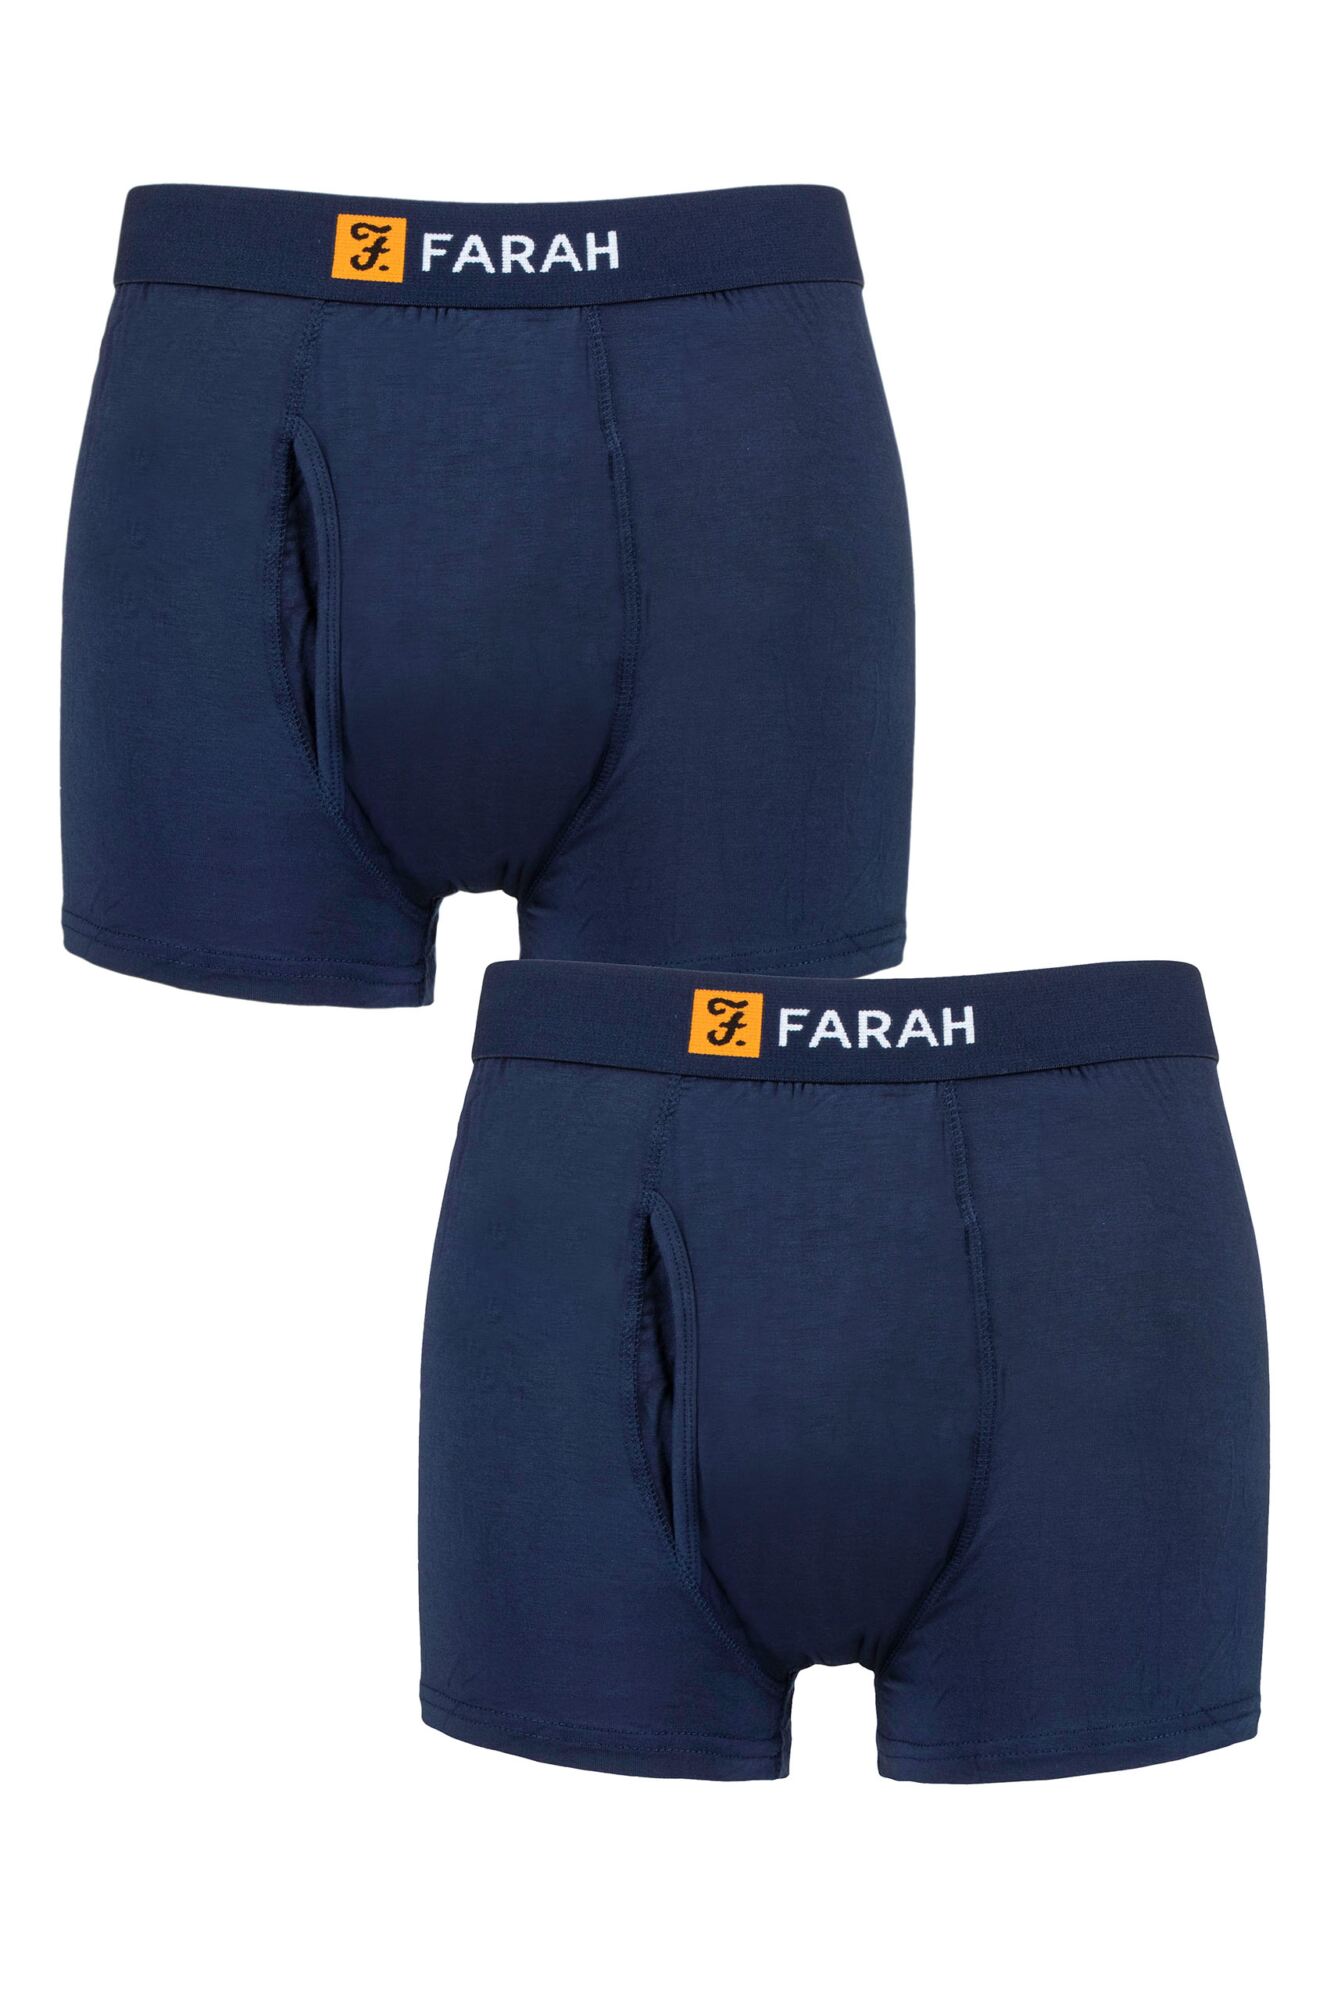 Farah-Mens Underwear-Bamboo Classic Keyhole Trunks-2 Pair Pack